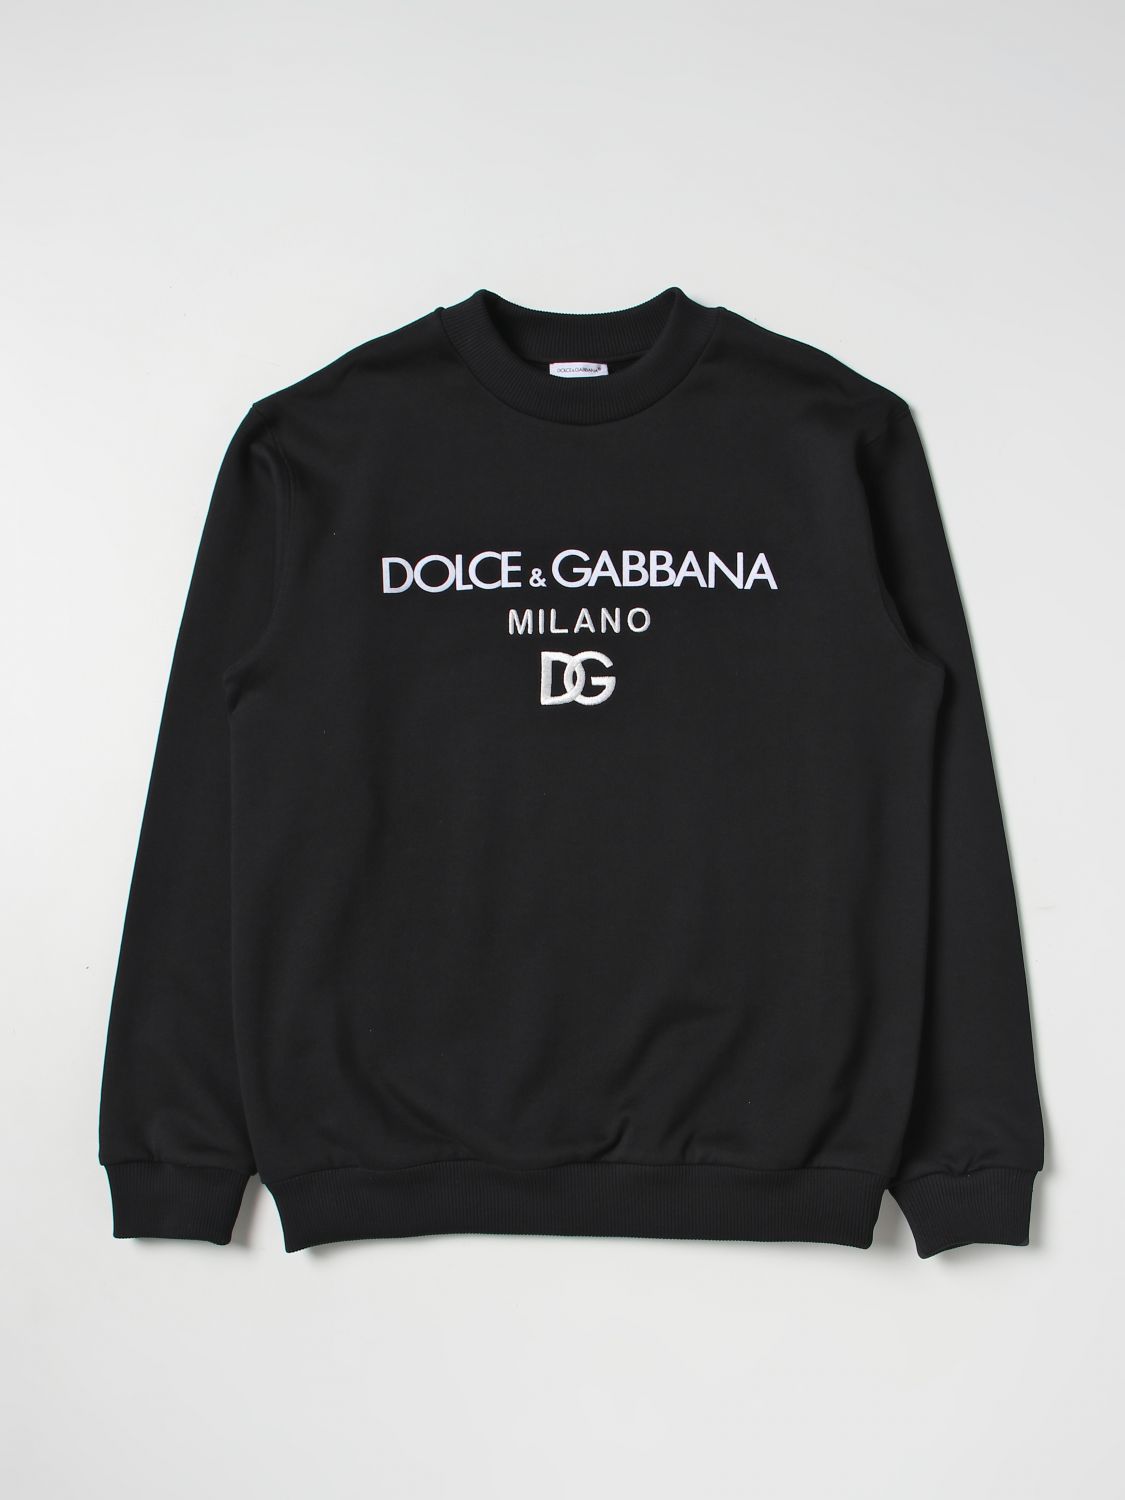 Dolce & Gabbana Kids' Cotton Sweatshirt In Black